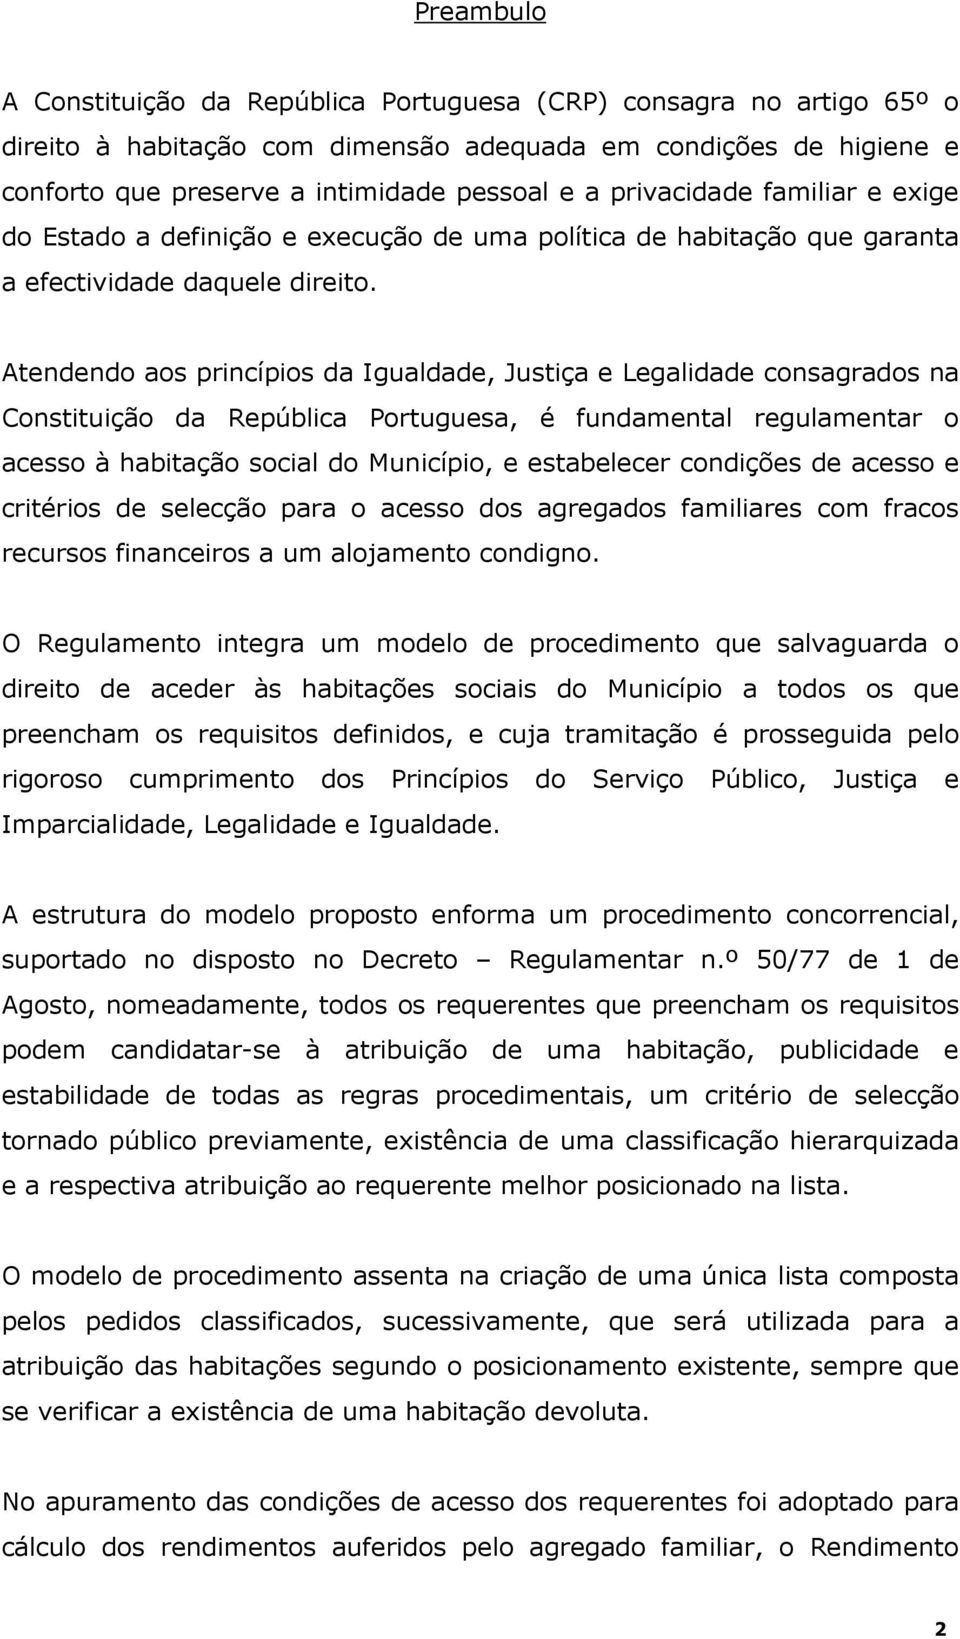 Atendendo aos princípios da Igualdade, Justiça e Legalidade consagrados na Constituição da República Portuguesa, é fundamental regulamentar o acesso à habitação social do Município, e estabelecer